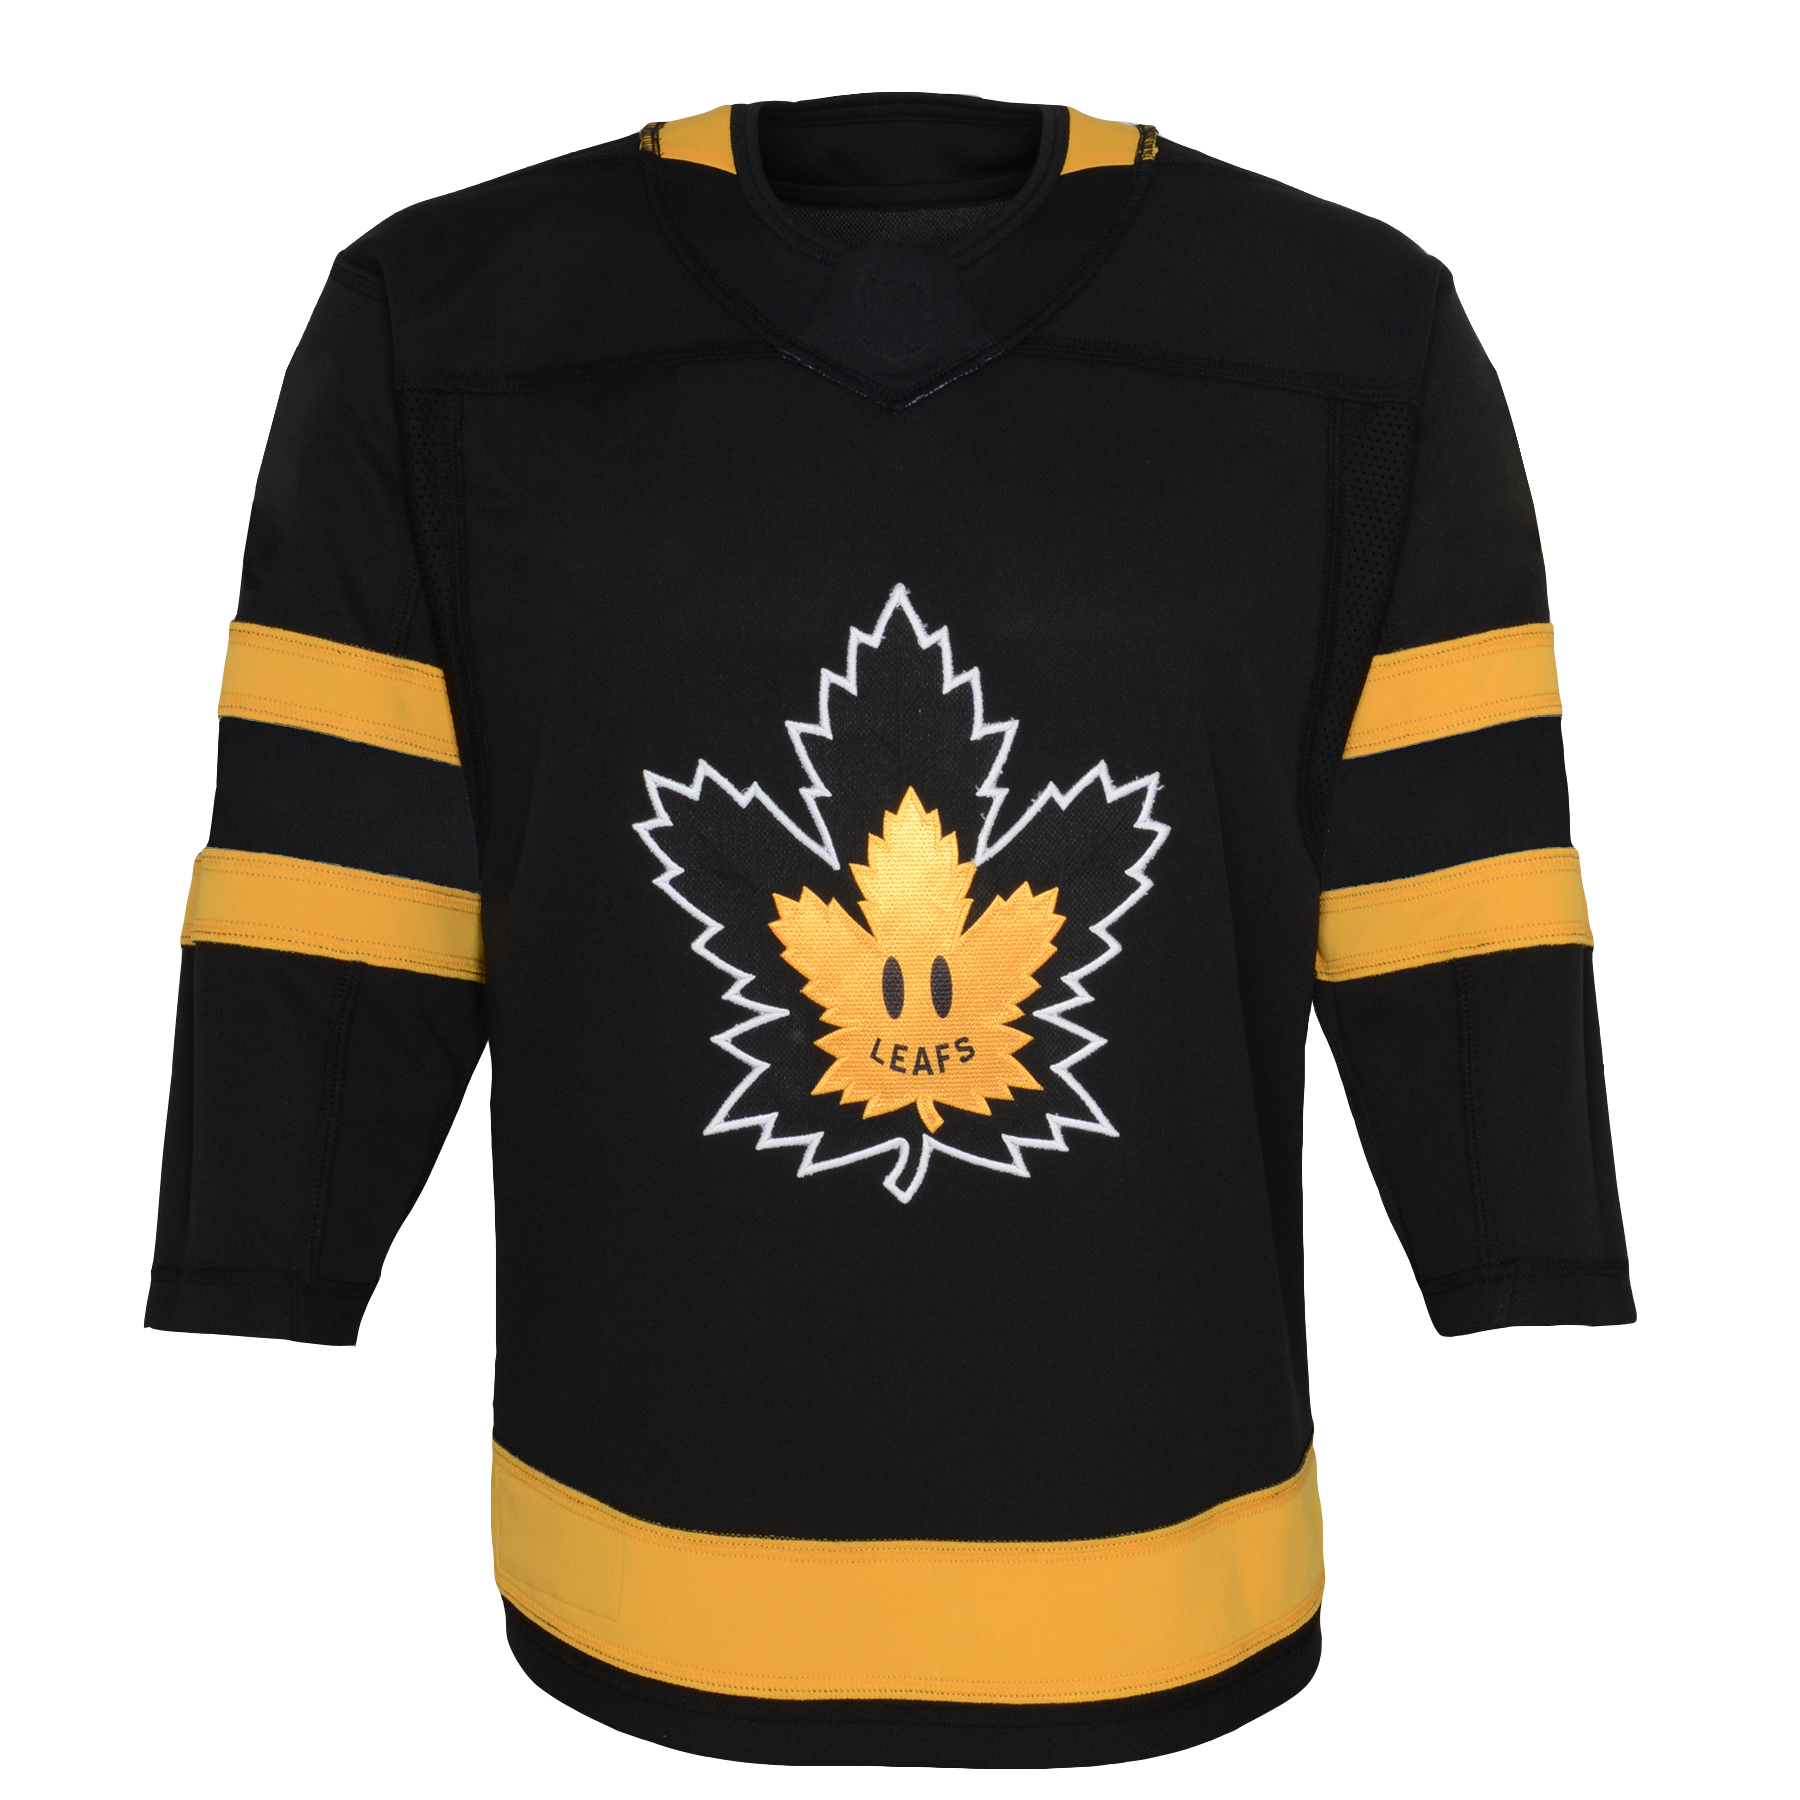 Toronto Maple Leafs: Jerseys & Merchandise